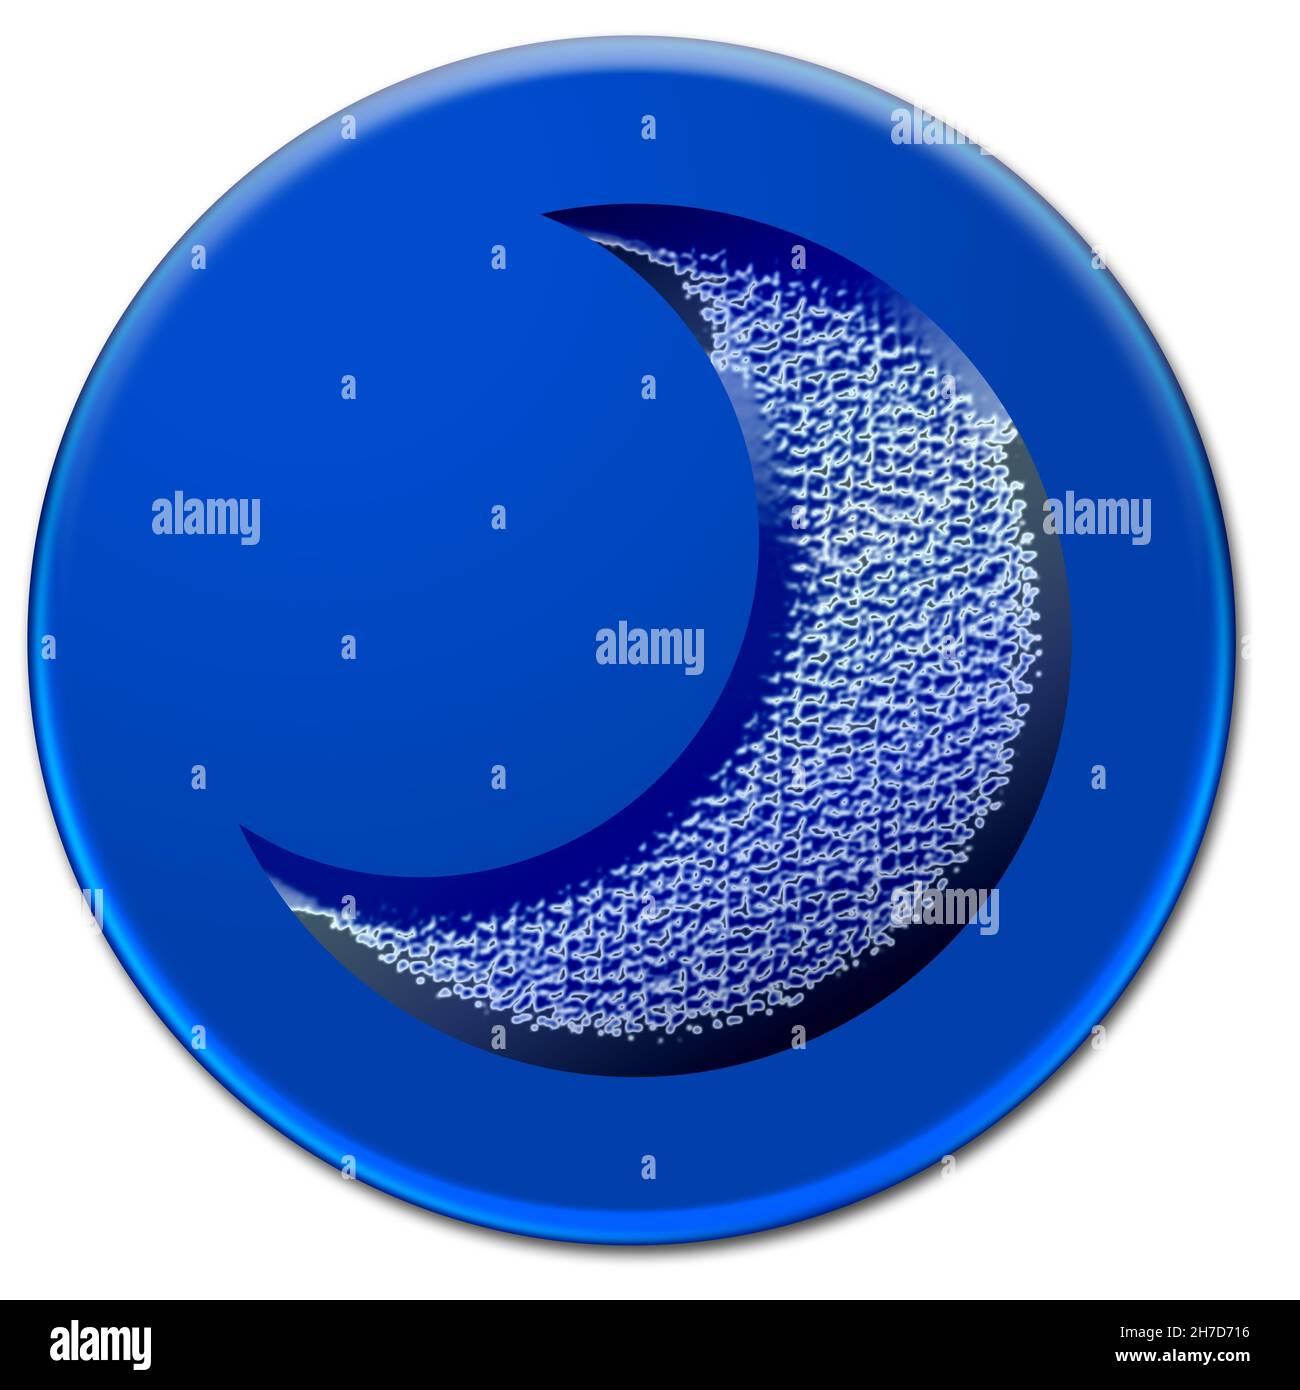 Abbildung eines eisigen, grungigen Mondes auf einem blauen Knopf, der auf weißem Hintergrund isoliert ist Stockfoto